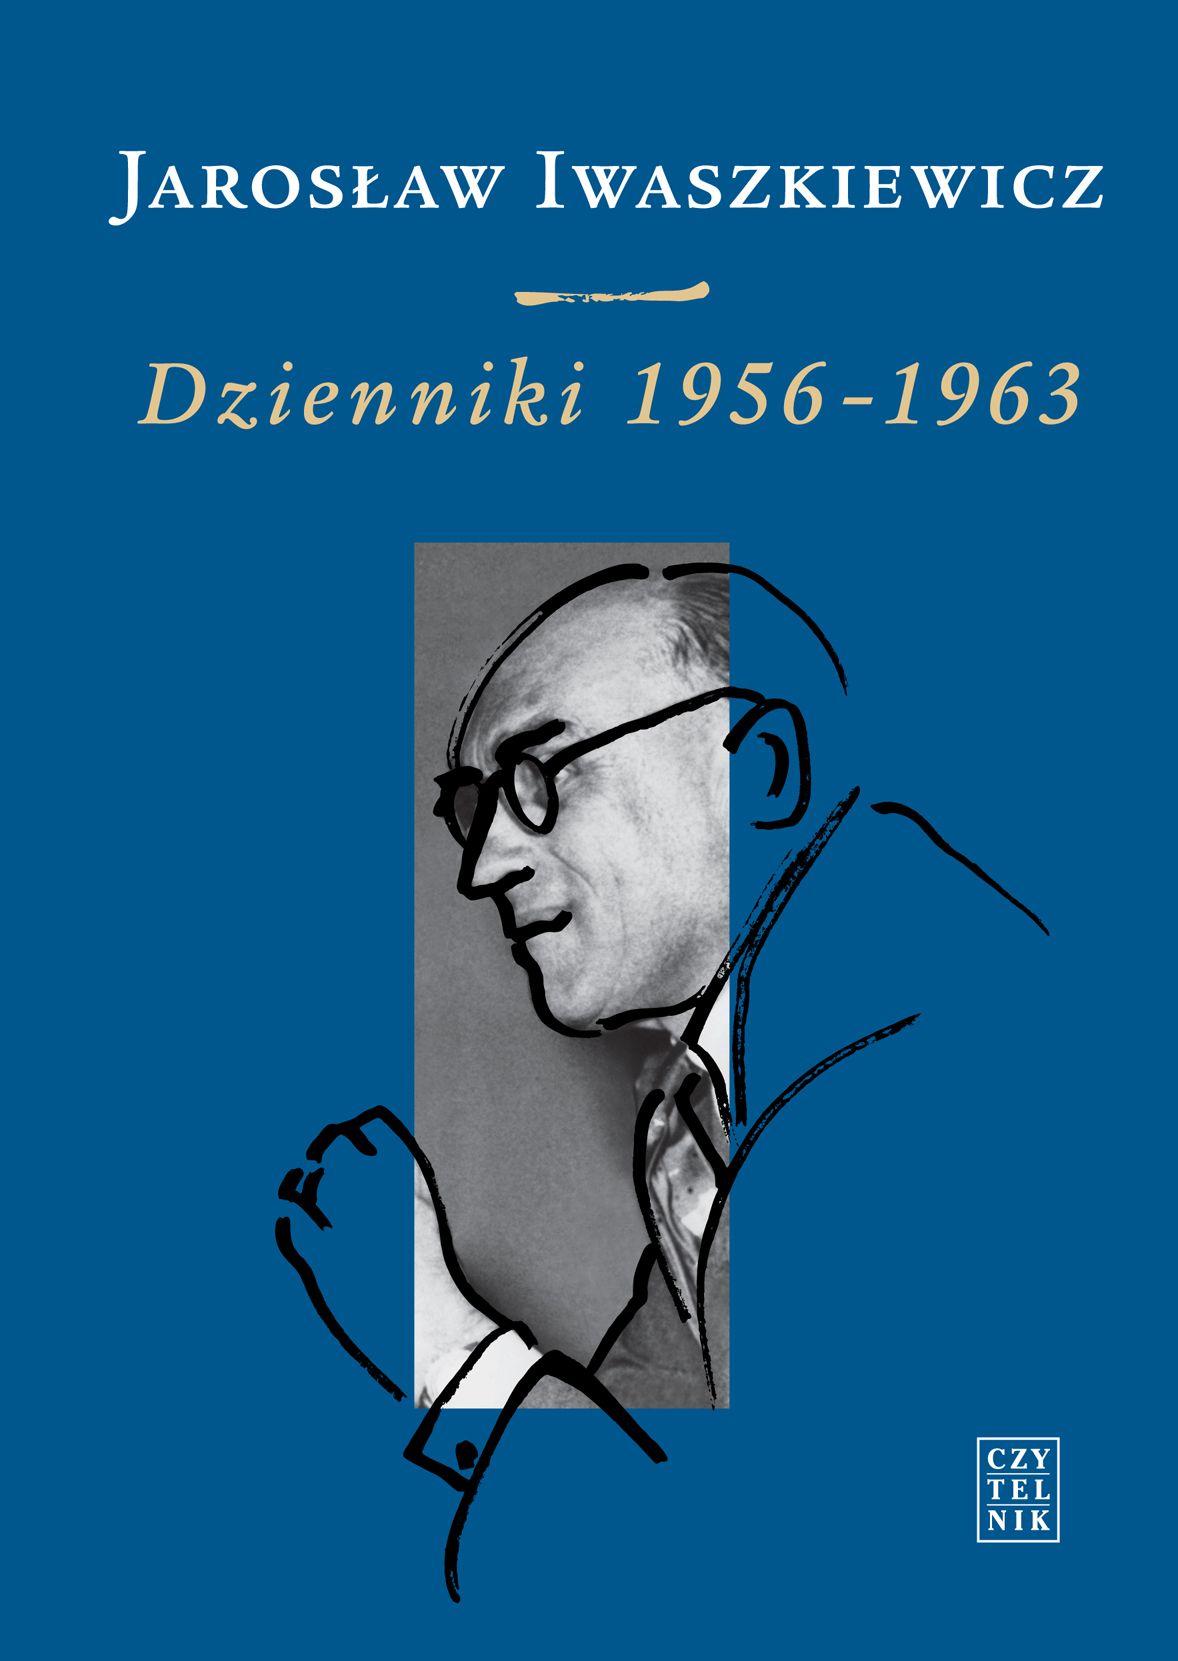 Jarosław Iwaszkiewicz, „Dzienniki 1956–1963”, Wydawnictwo Czytelnik, okładka (źródło: materiały prasowe wydawcy)